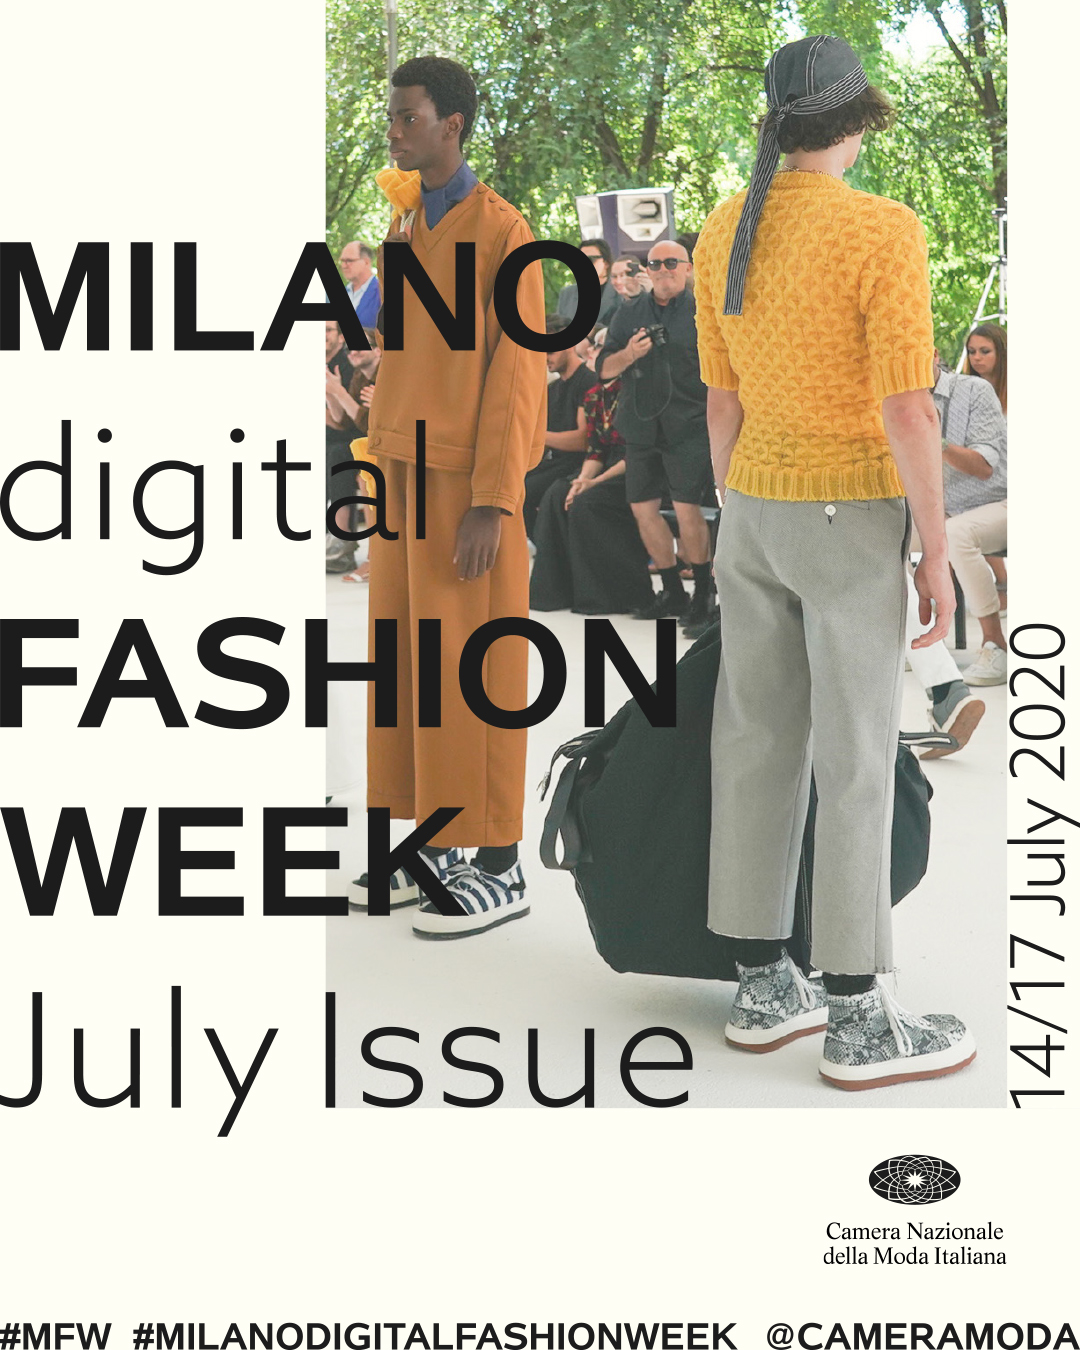 Digital Fashion Week